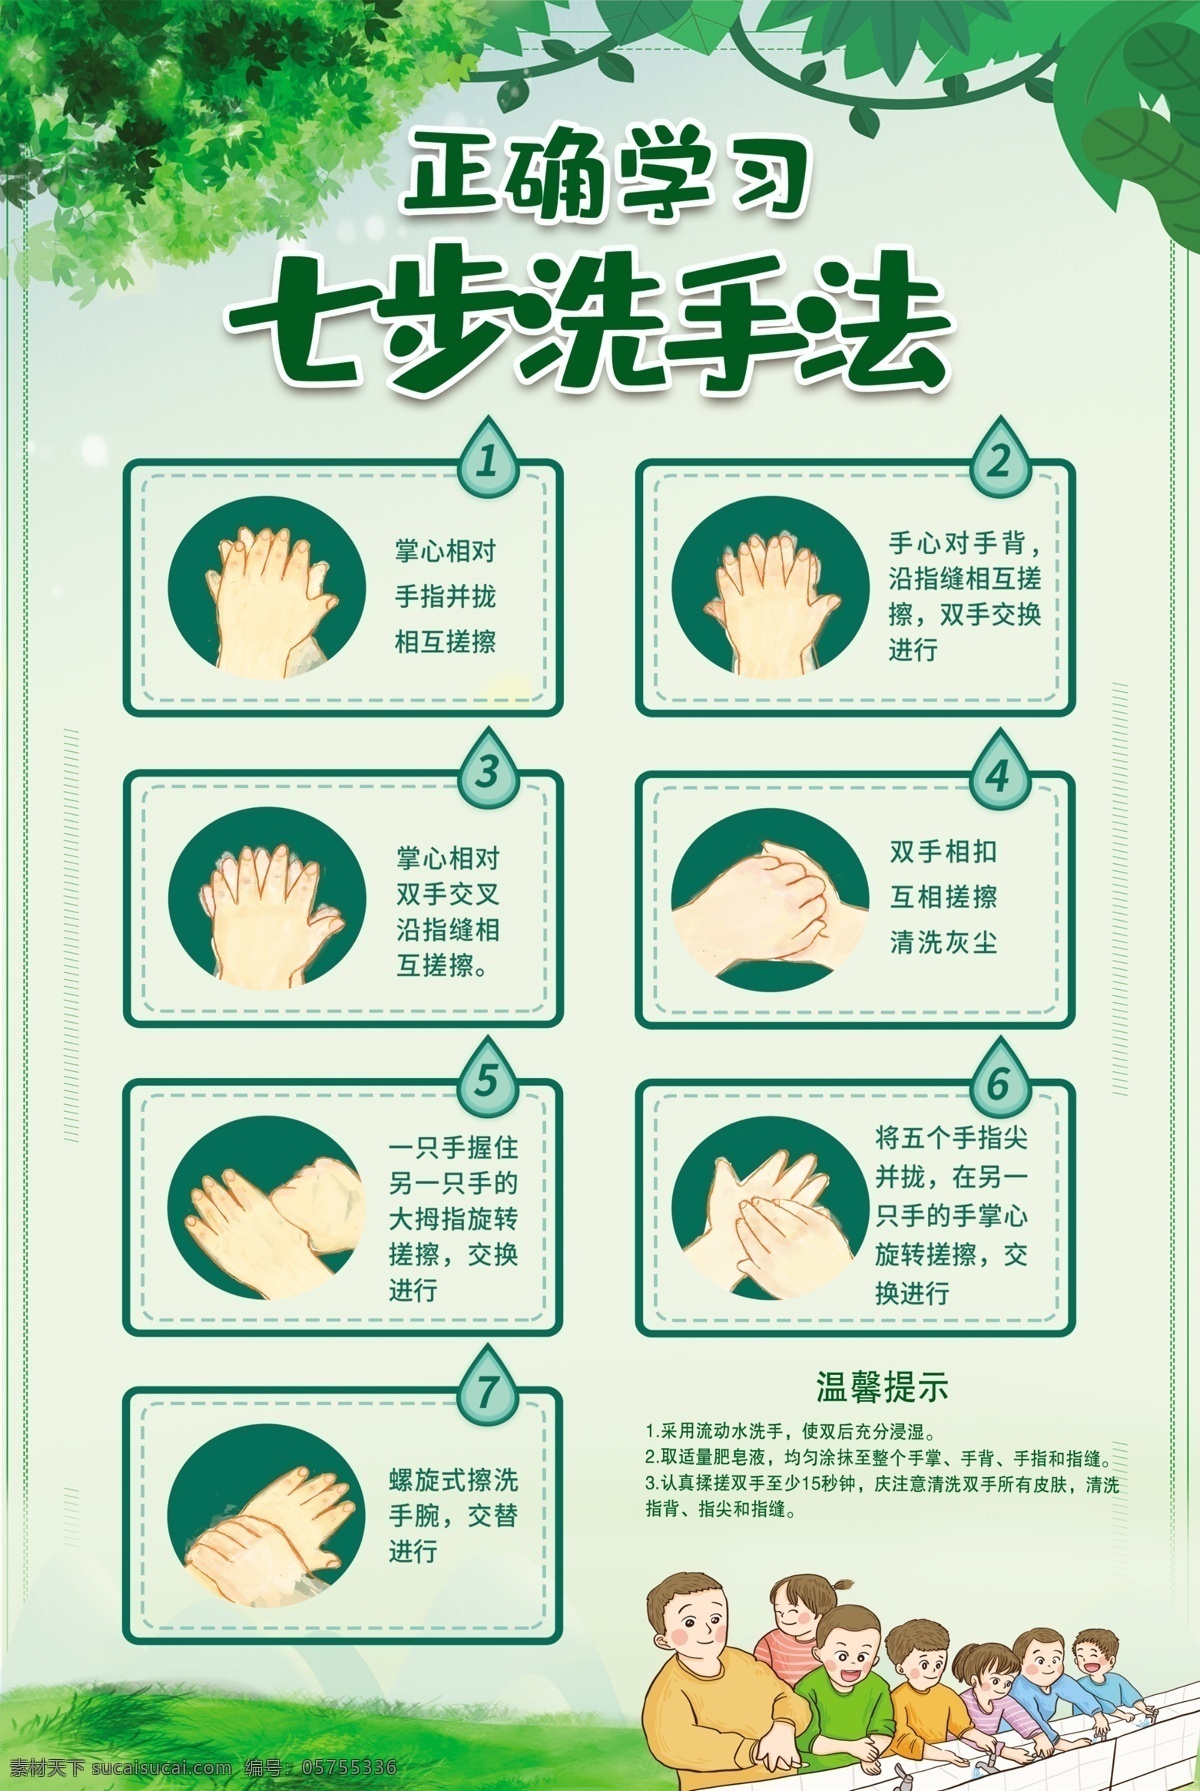 七步洗手法 正确洗手 洗手 防疫 卫生 注意卫生 卫生安全 学习洗手 洗手步骤 七步洗手 七步